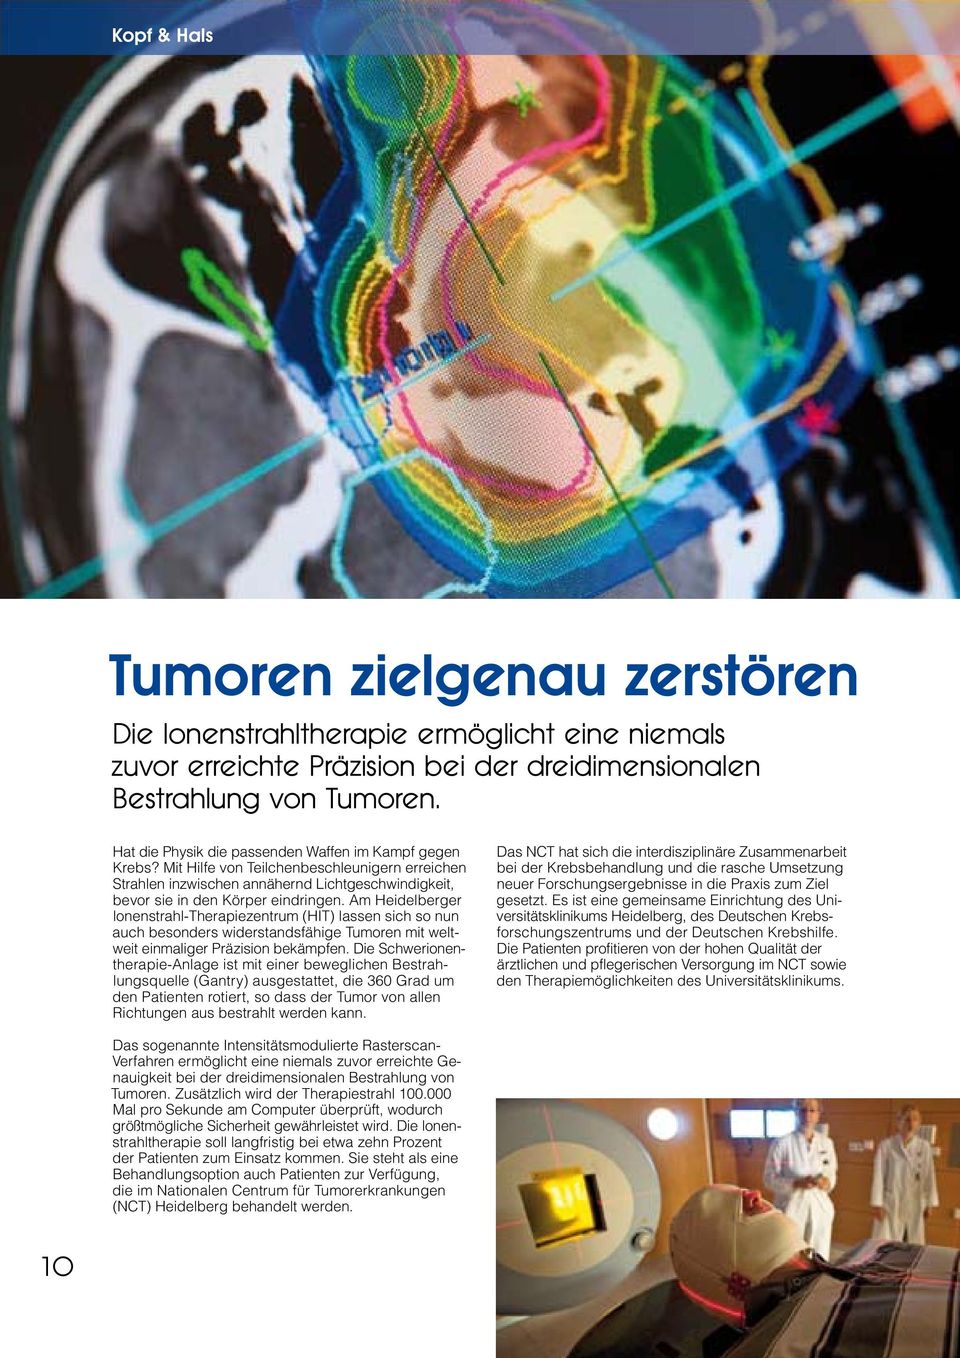 Am Heidelberger lonenstrahl-therapiezentrum (HIT) lassen sich so nun auch besonders widerstandsfähige Tumoren mit weltweit einmaliger Präzision bekämpfen.